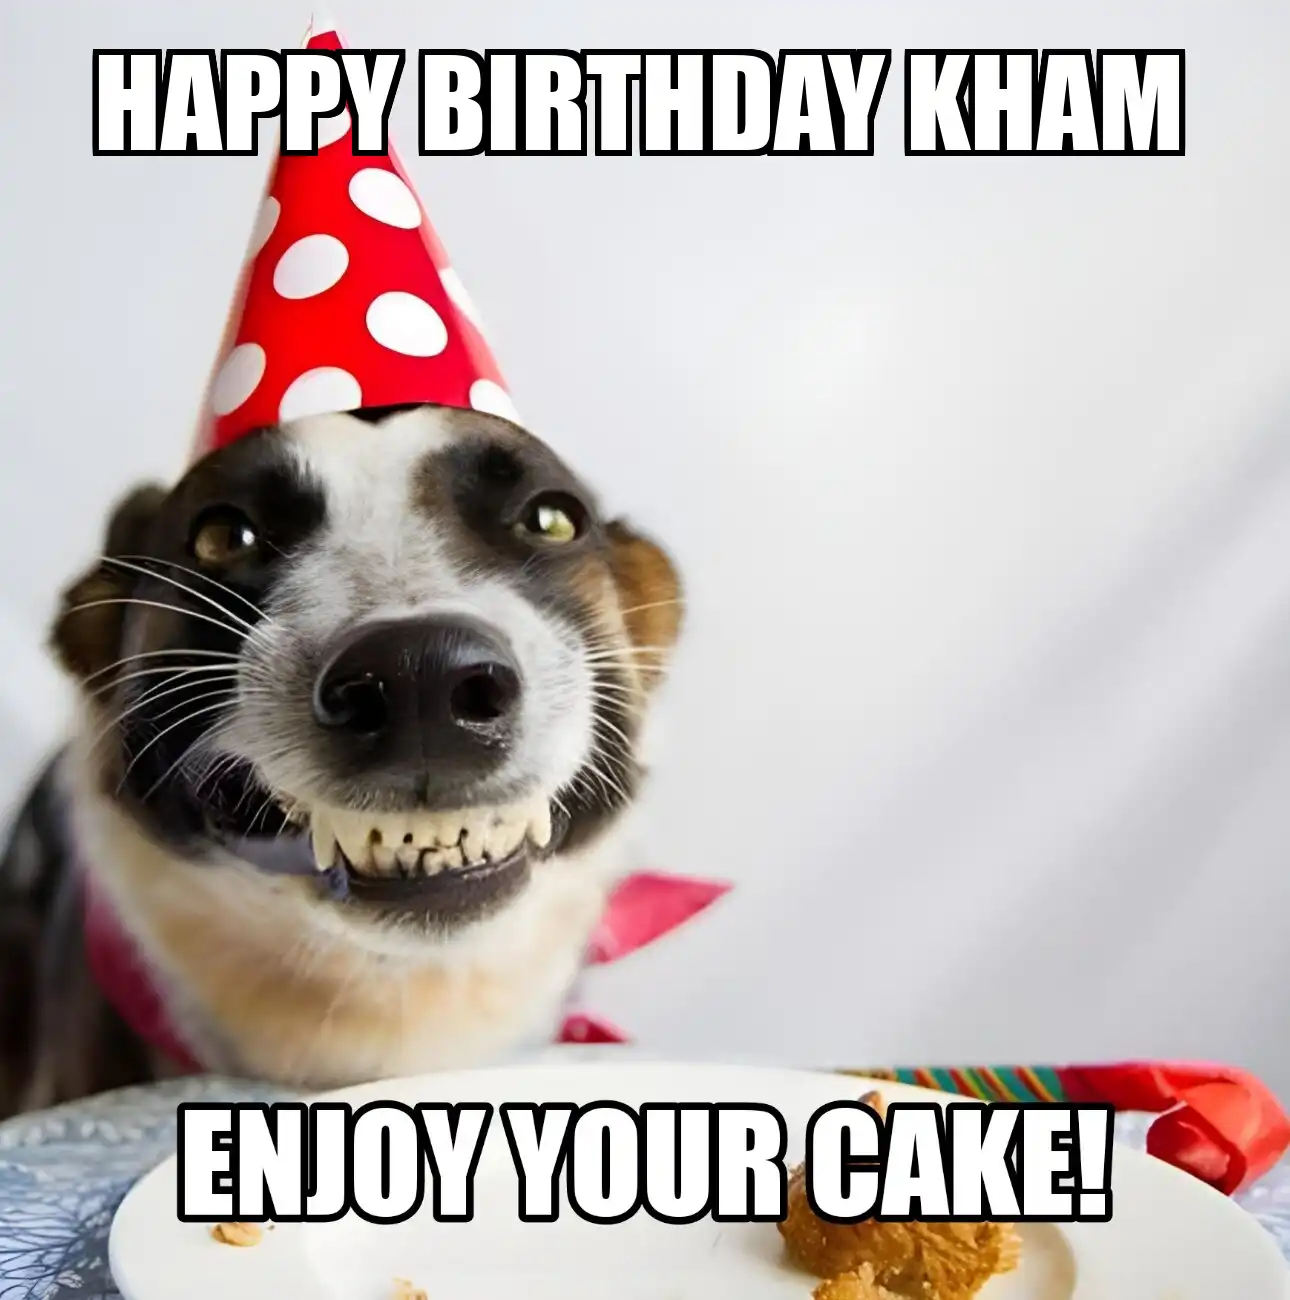 Happy Birthday Kham Enjoy Your Cake Dog Meme